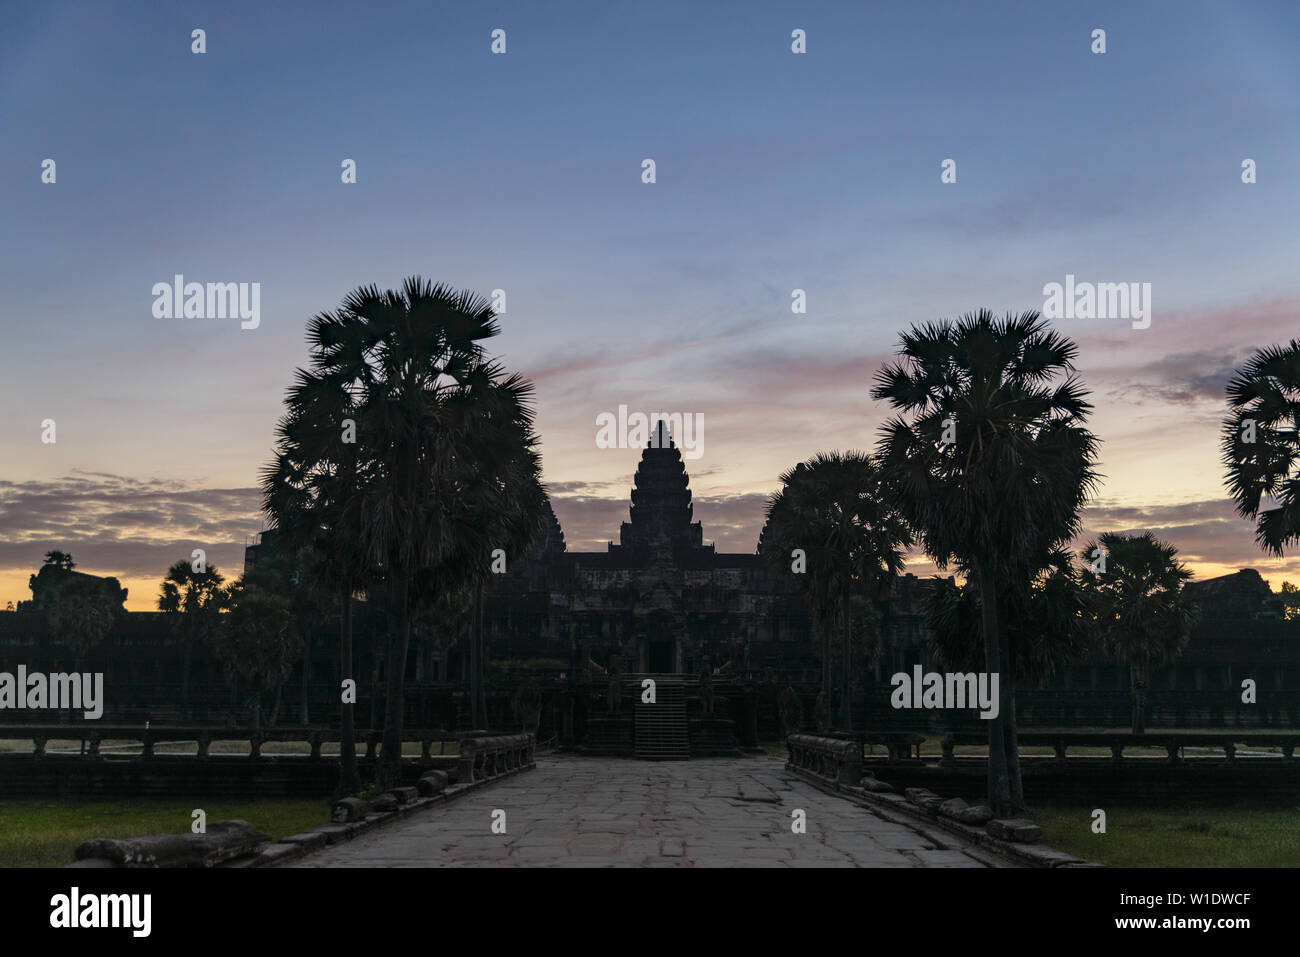 Angkor Wat dramatischer Himmel in der Morgendämmerung Hauptfassade silhouette Reflexion über Wasser Teich. Weltberühmte Tempel in Kambodscha. Stockfoto